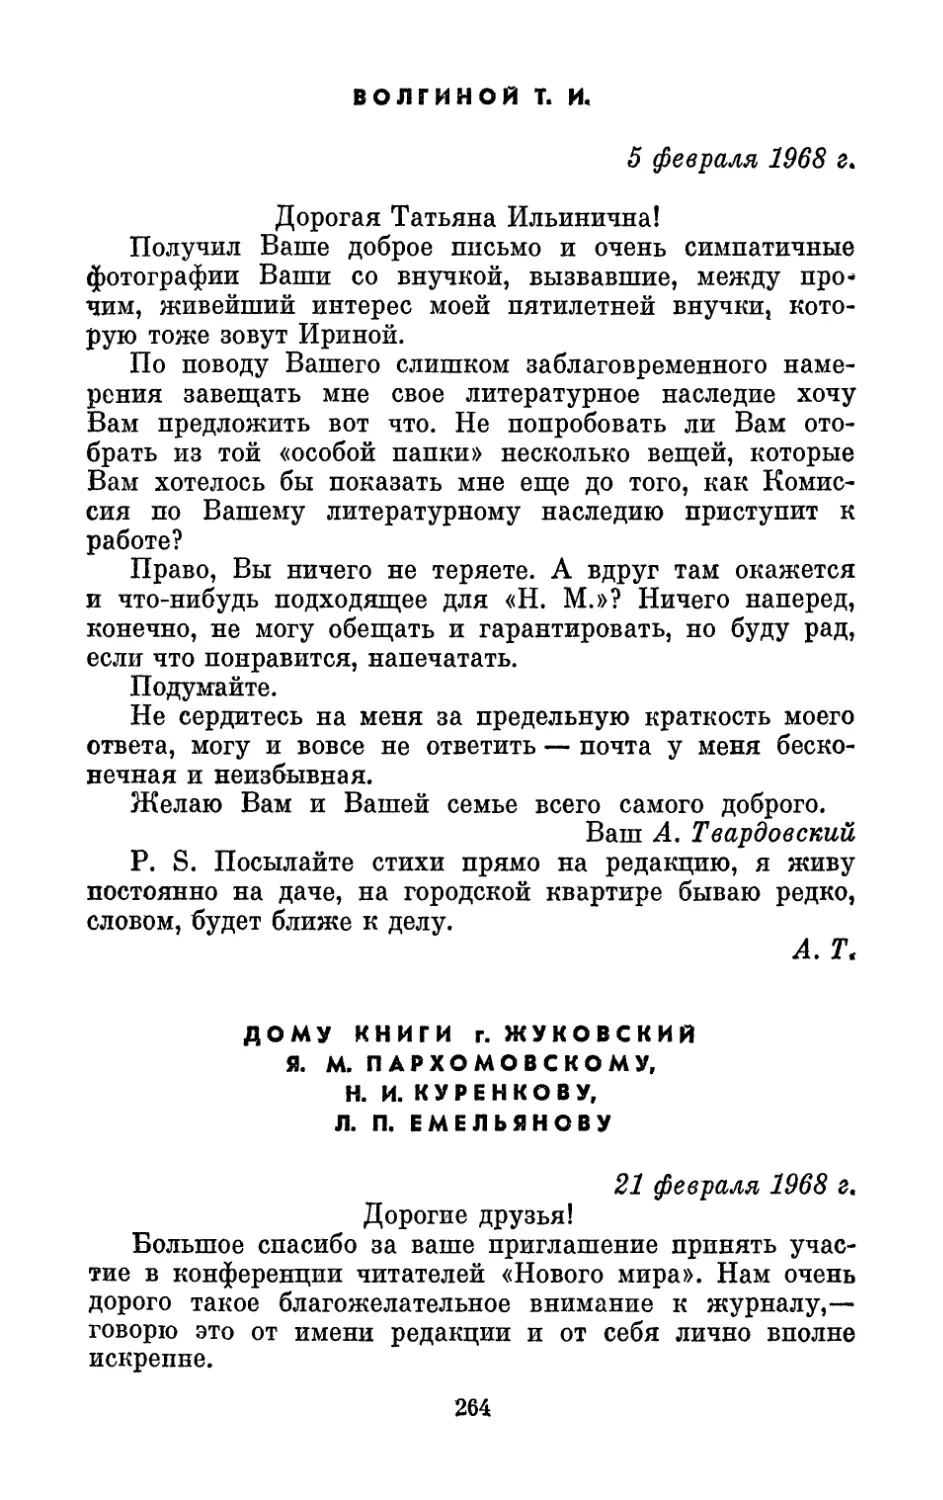 Волгиной Т. И., 5 февраля 1968 г.
Дому книги г. Жуковский, 21 февраля 1968 г.